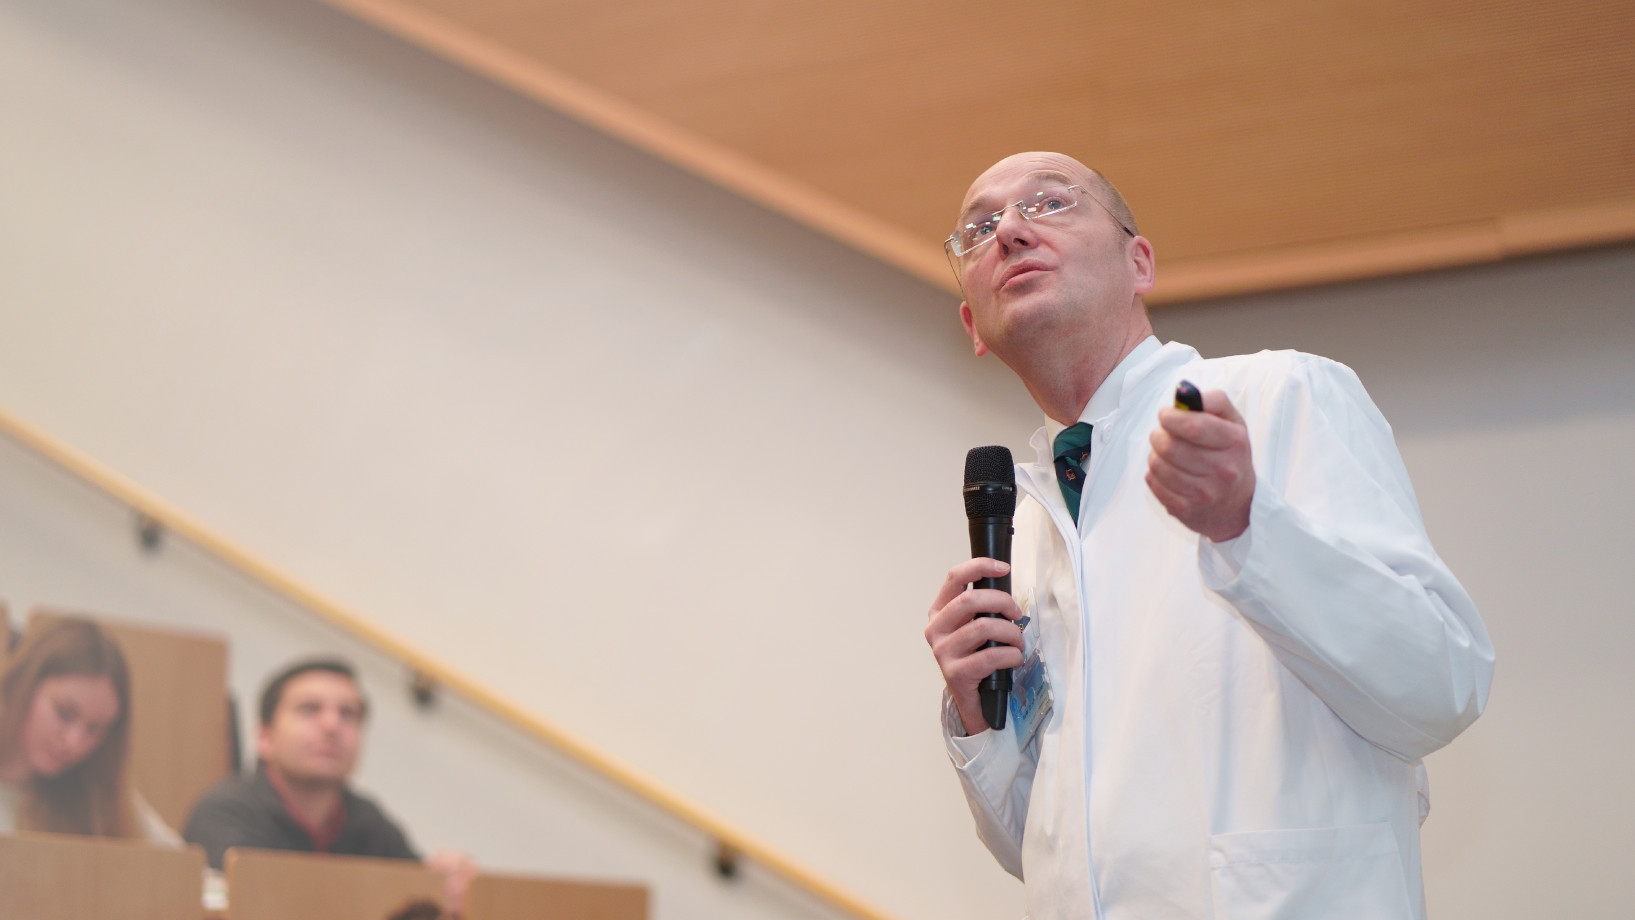 Prof. Wulf von der Klinik für Hämatologie und Onkologie hält eine Vorlesung